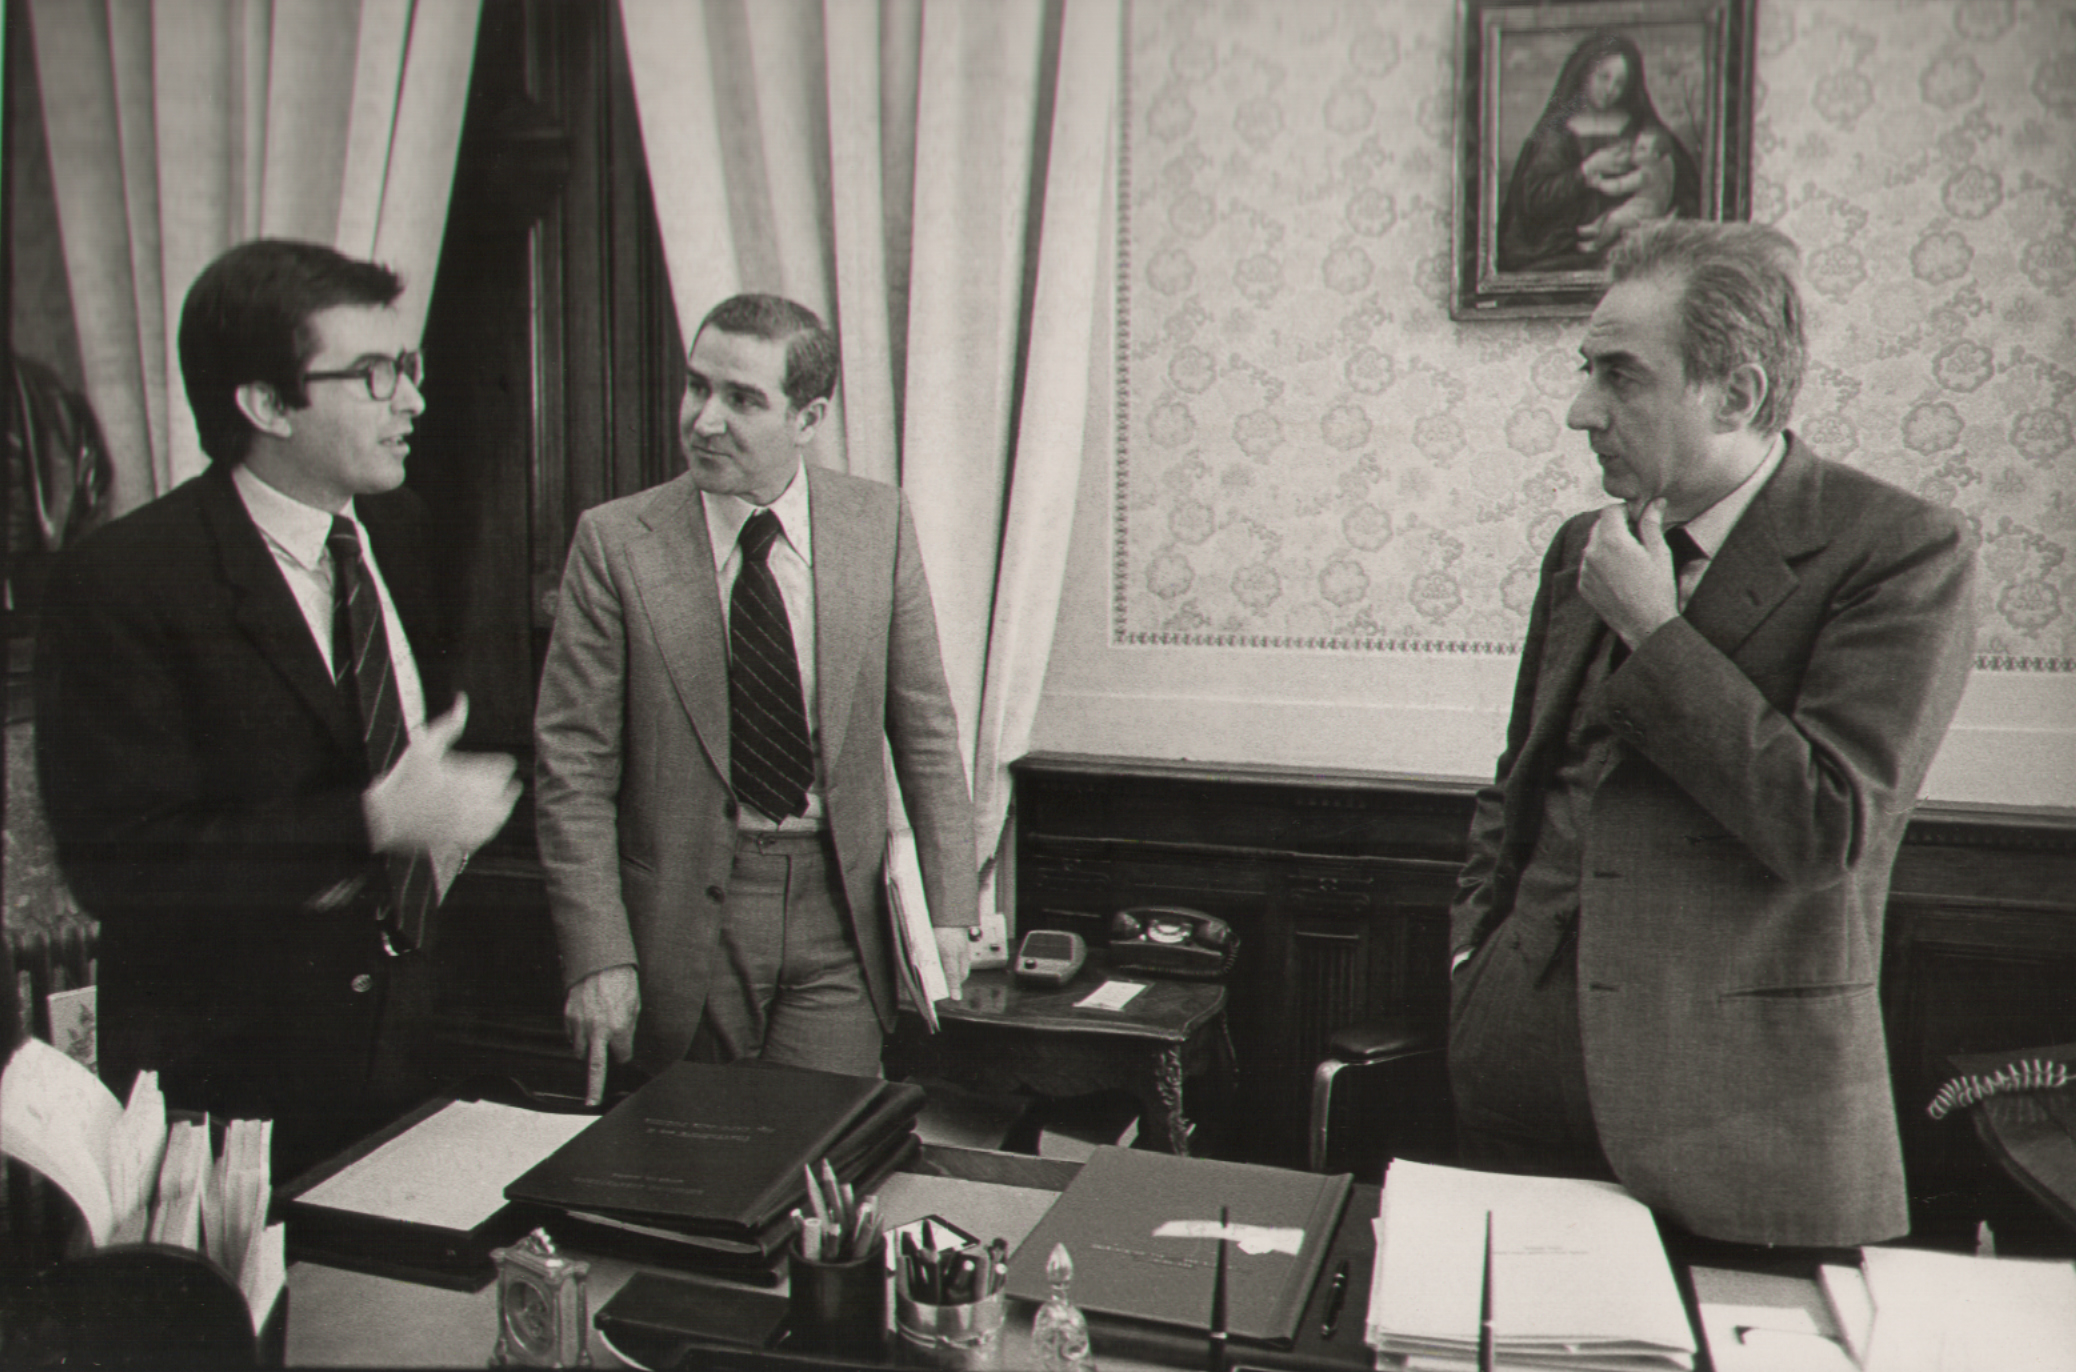   1977. Al Ministero dell'Interno con Luigi Zanda e Alfredo Masala.